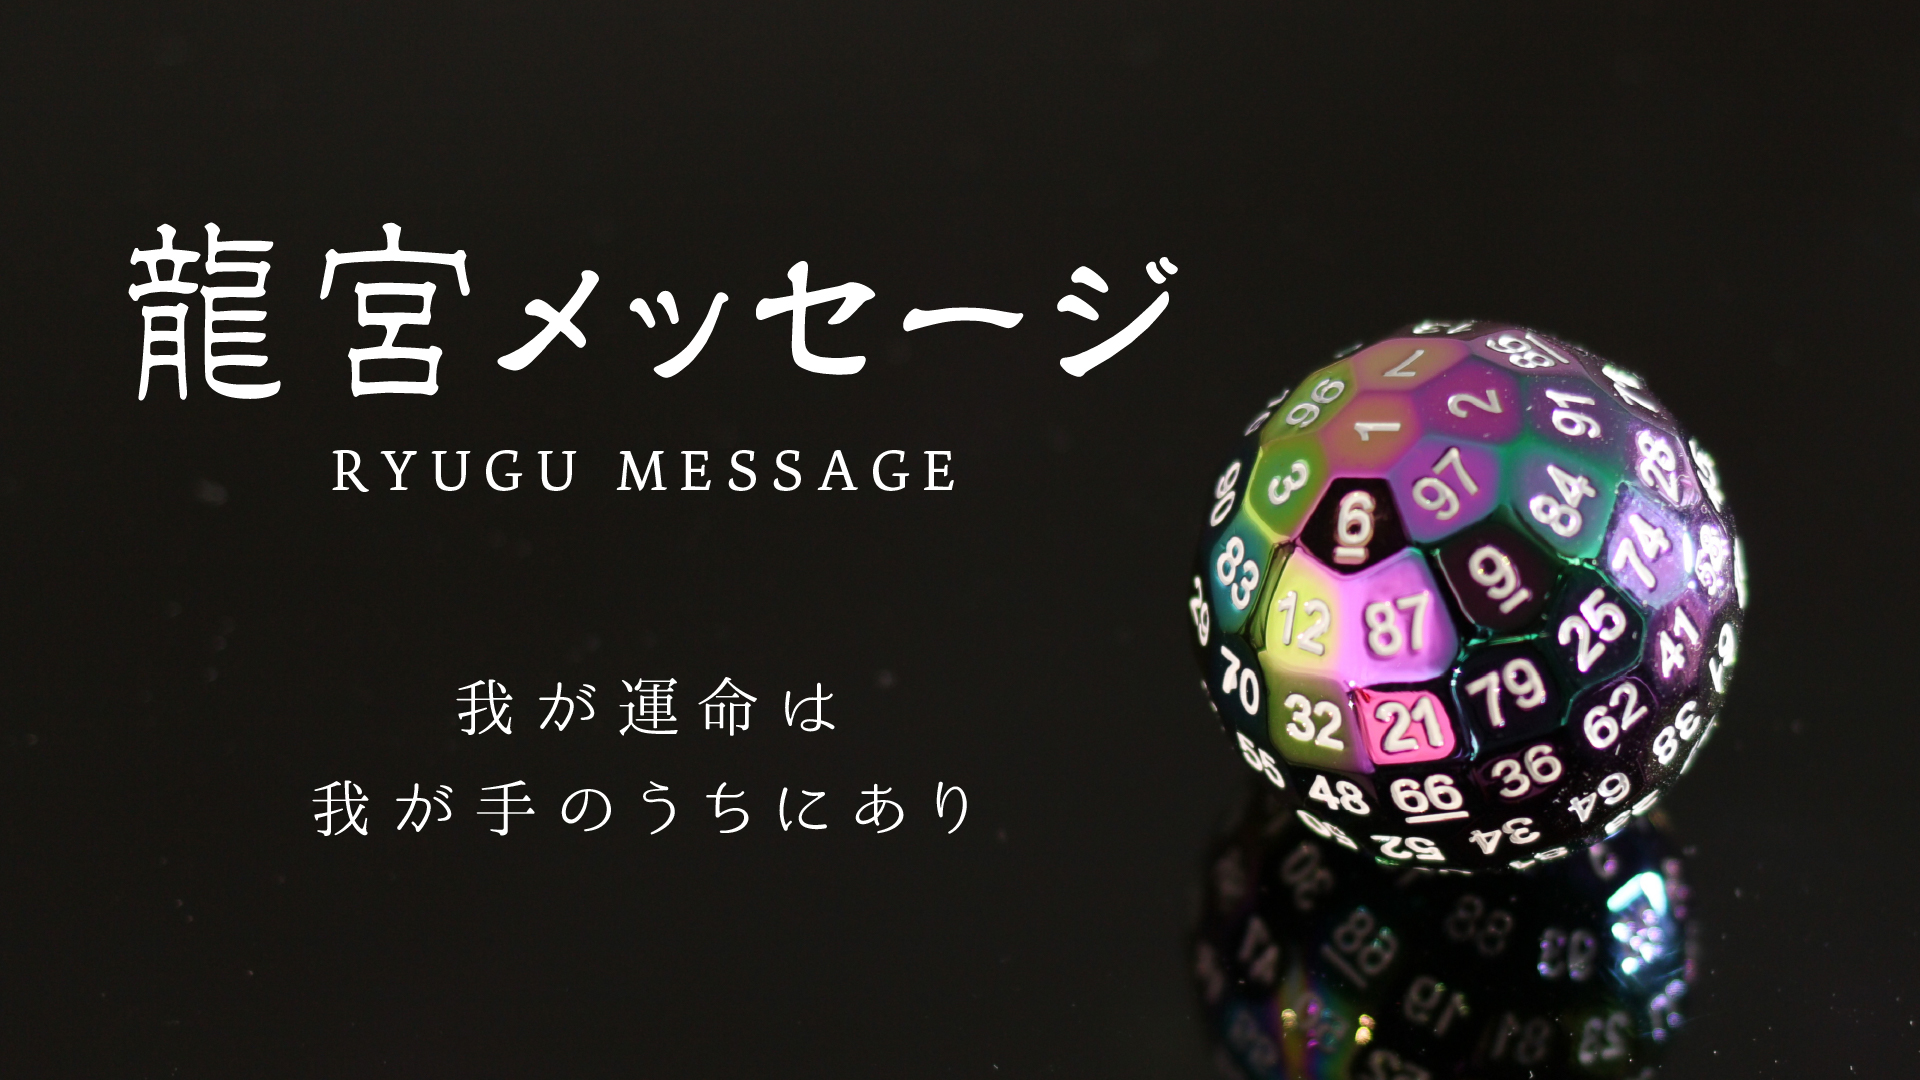 Ryugu Message